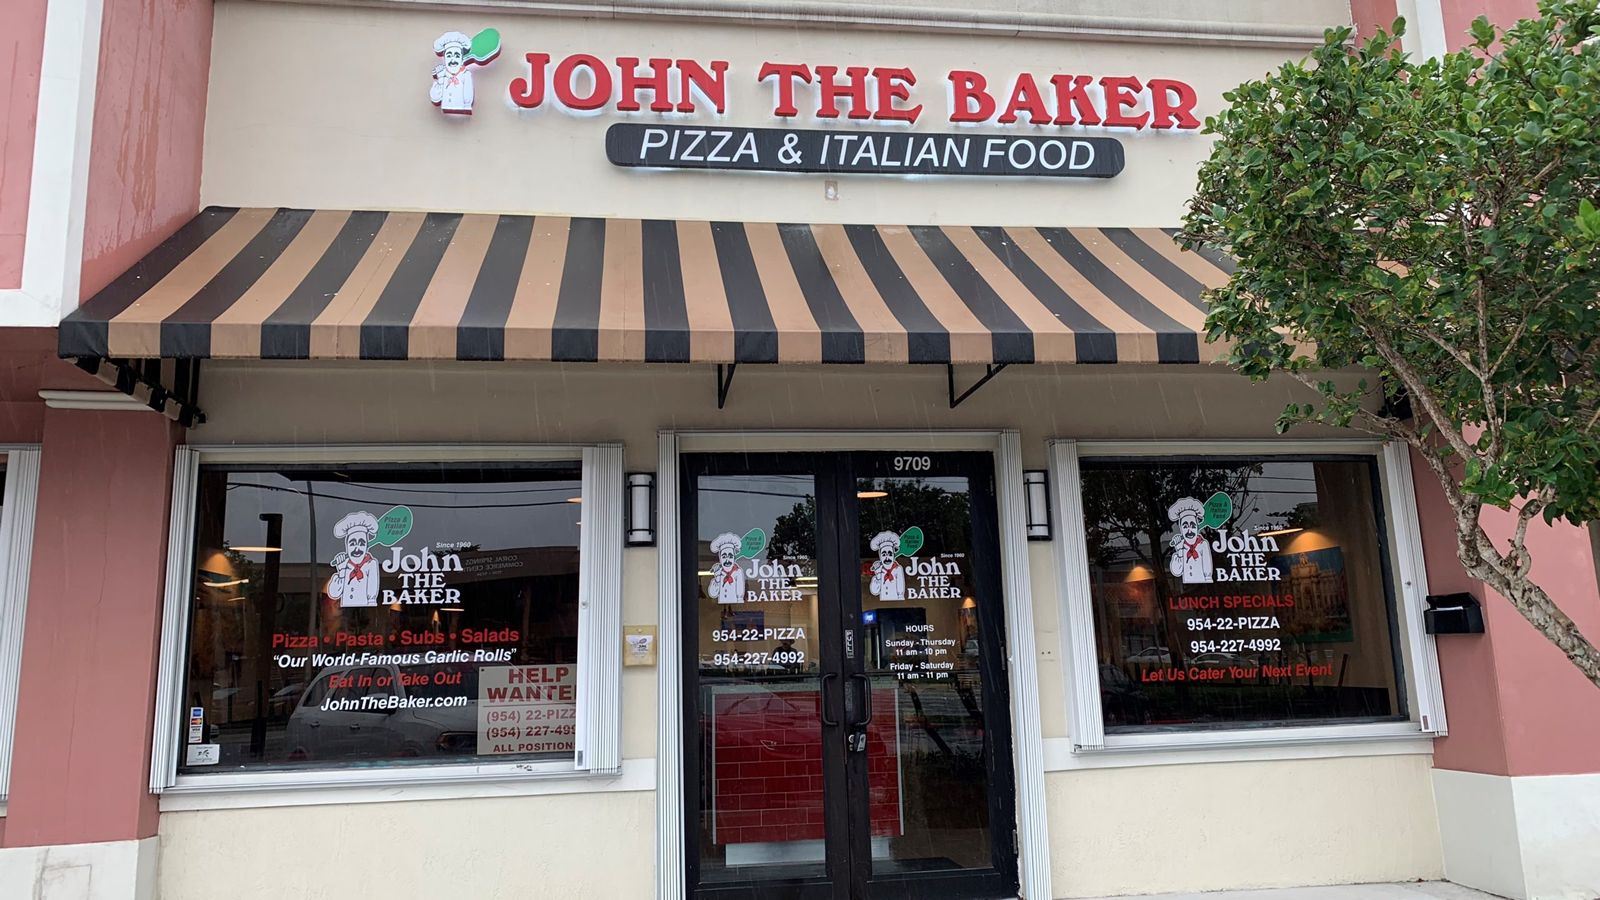 le-restaurant-italien-john-the-baker-voit-le-succes-des-jpg